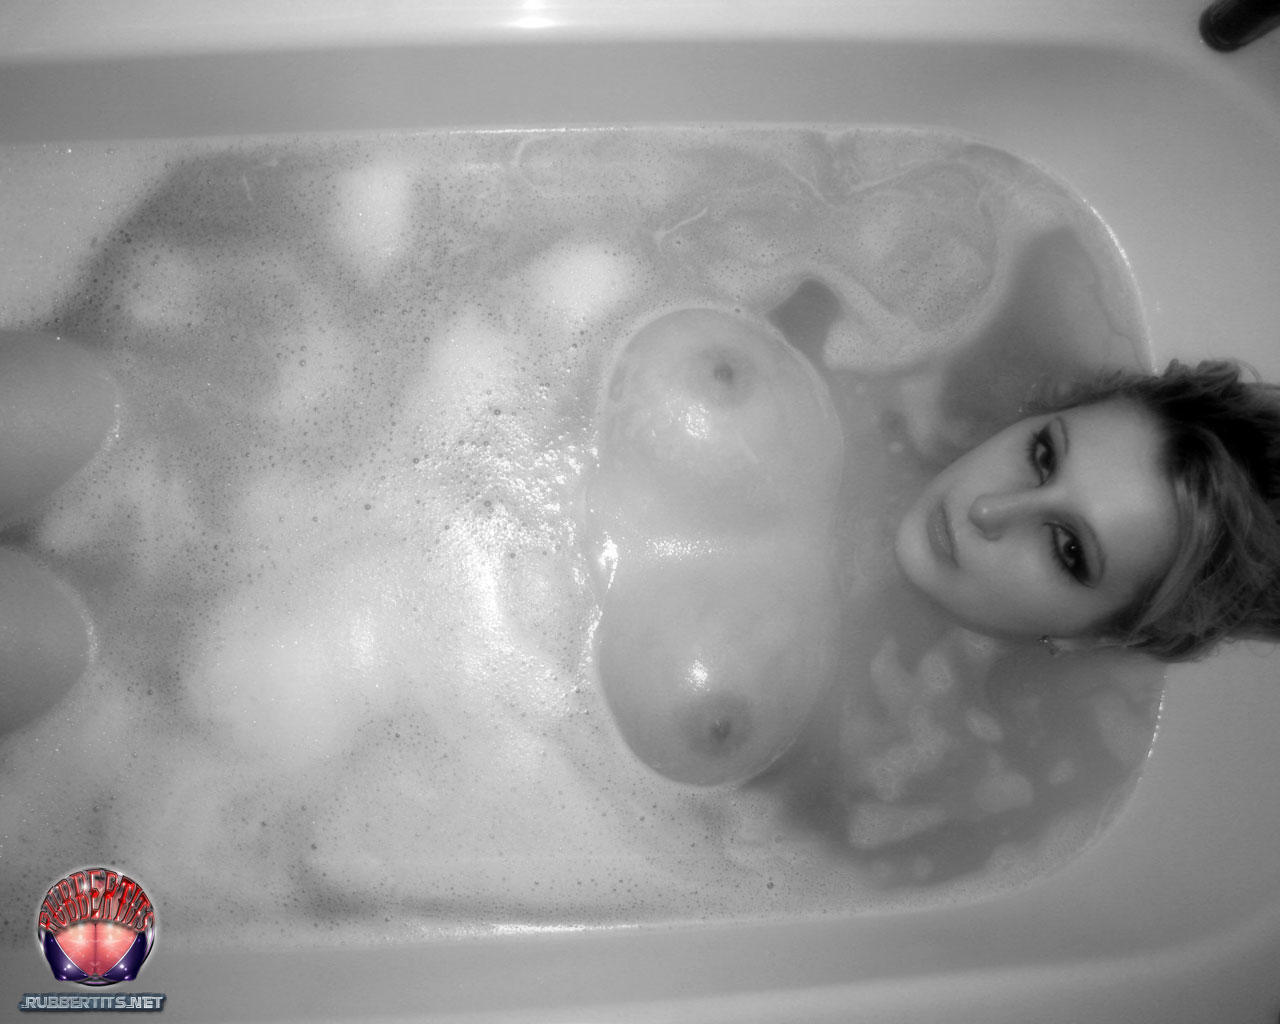 Rubber Tits Bathtime porno foto #426805766